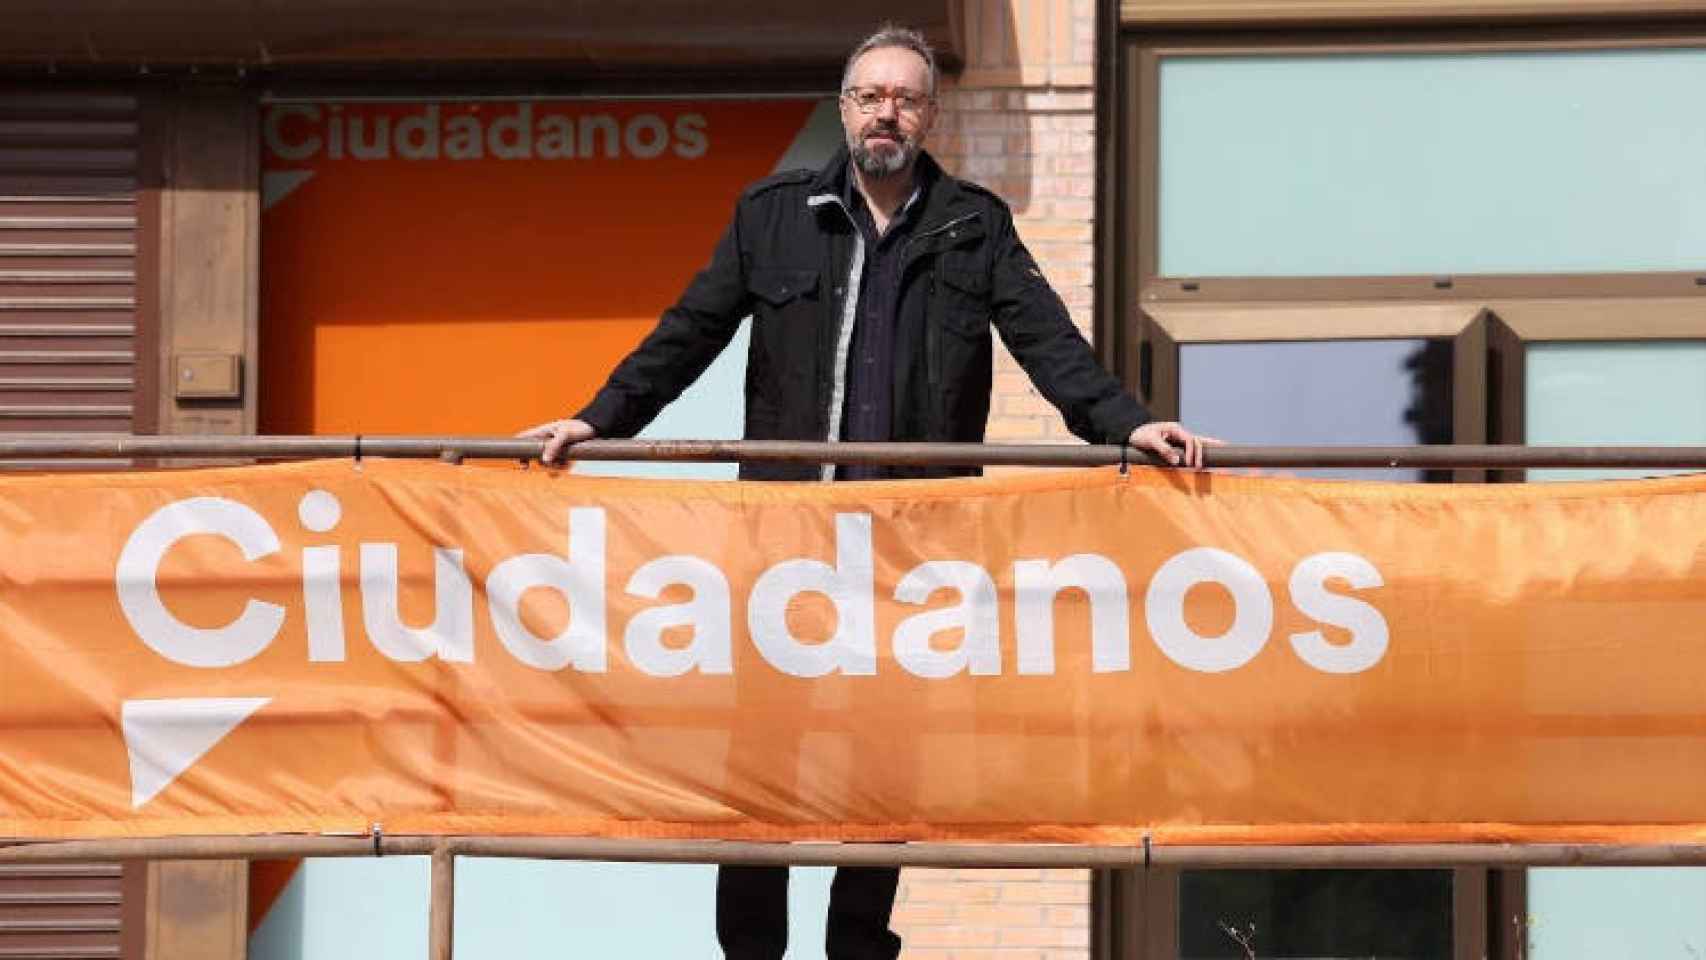 Juan Carlos Girauta en la sede Ciudadanos en Toledo. Foto: Óscar Huertas